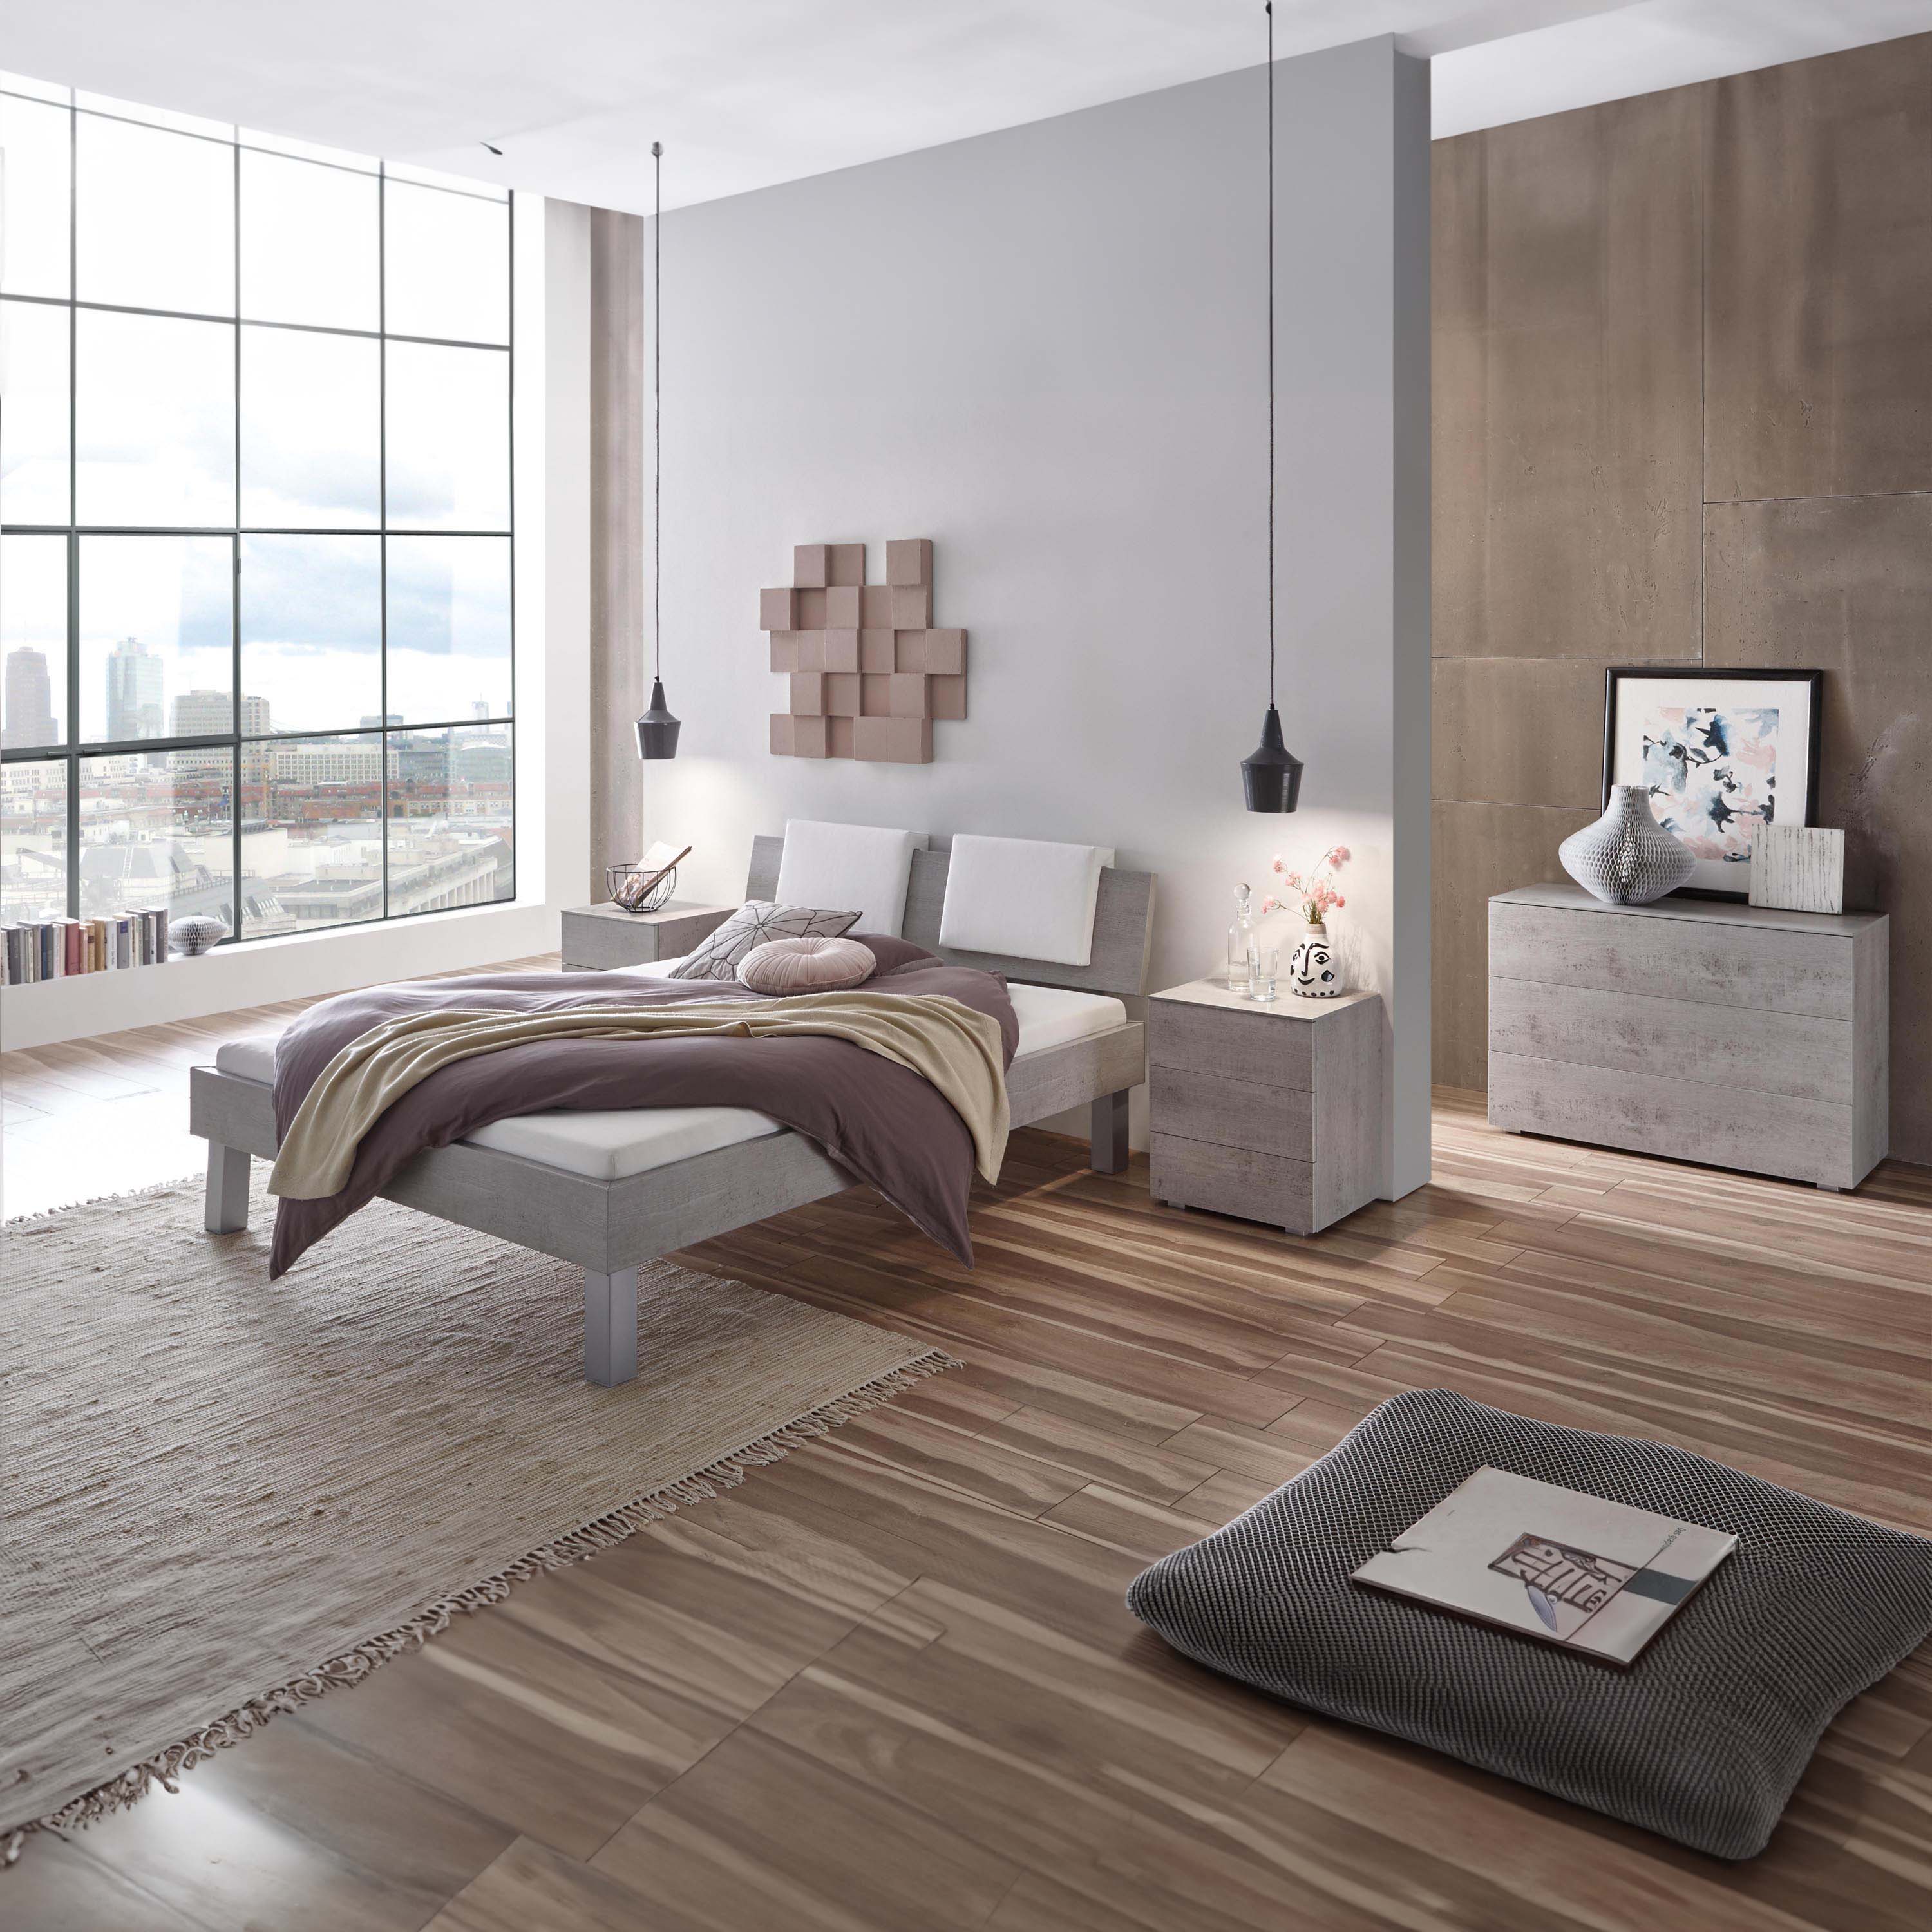 Hasena Top-Line - Bett in modernem Design, Farbe Beton, Kopfteil Advance 18 mit Dekokissen